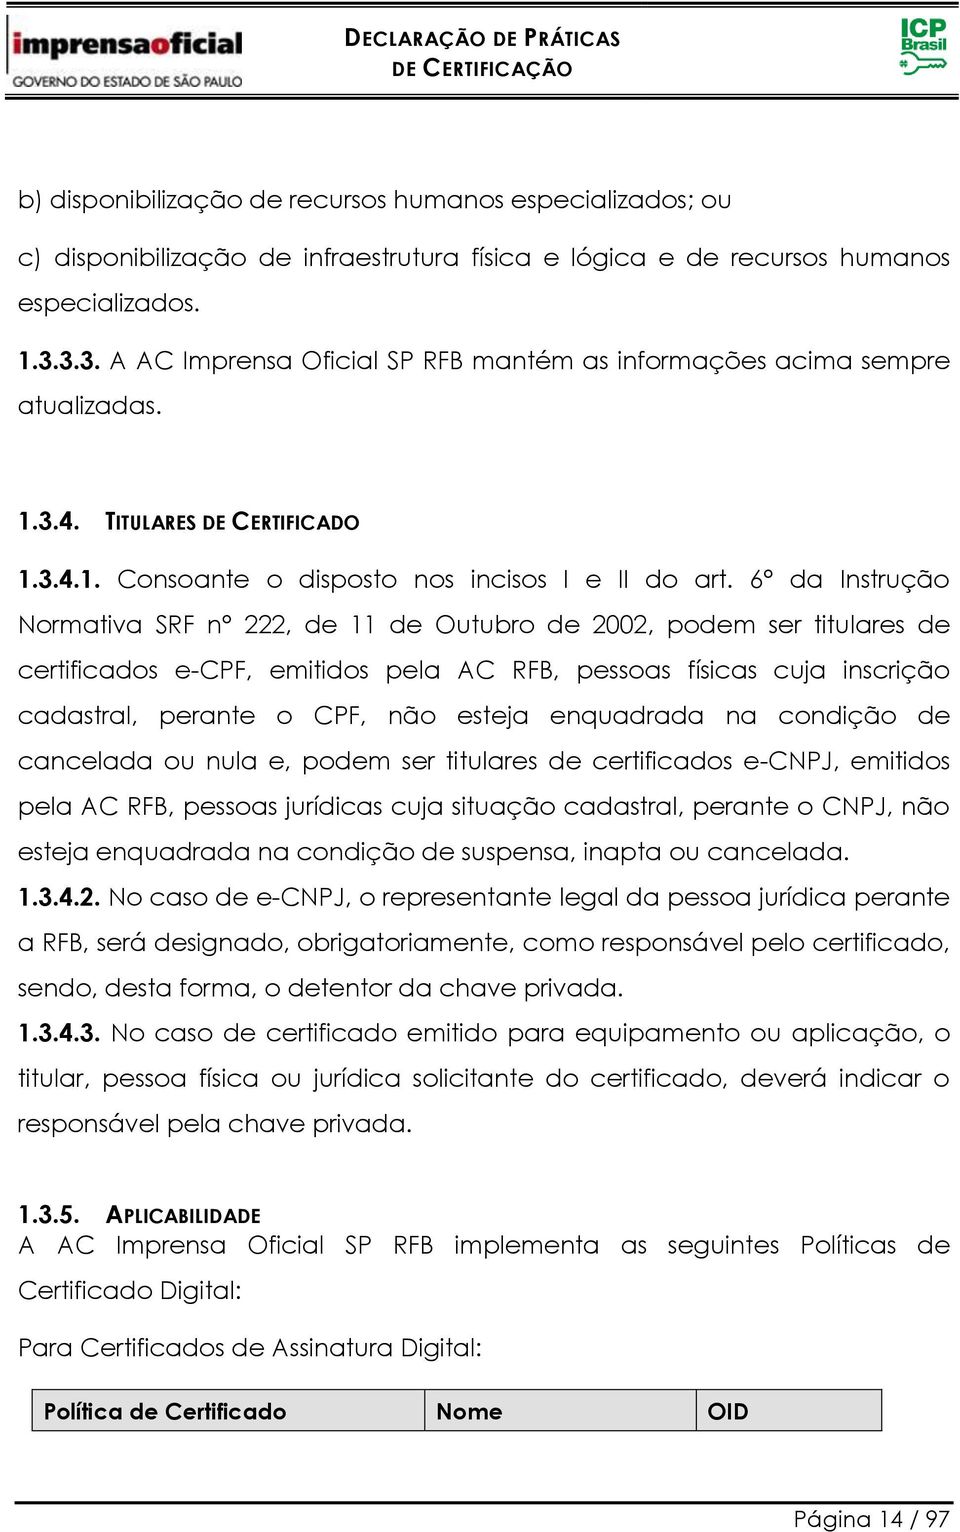 6 da Instrução Normativa SRF n 222, de 11 de Outubro de 2002, podem ser titulares de certificados e-cpf, emitidos pela AC RFB, pessoas físicas cuja inscrição cadastral, perante o CPF, não esteja